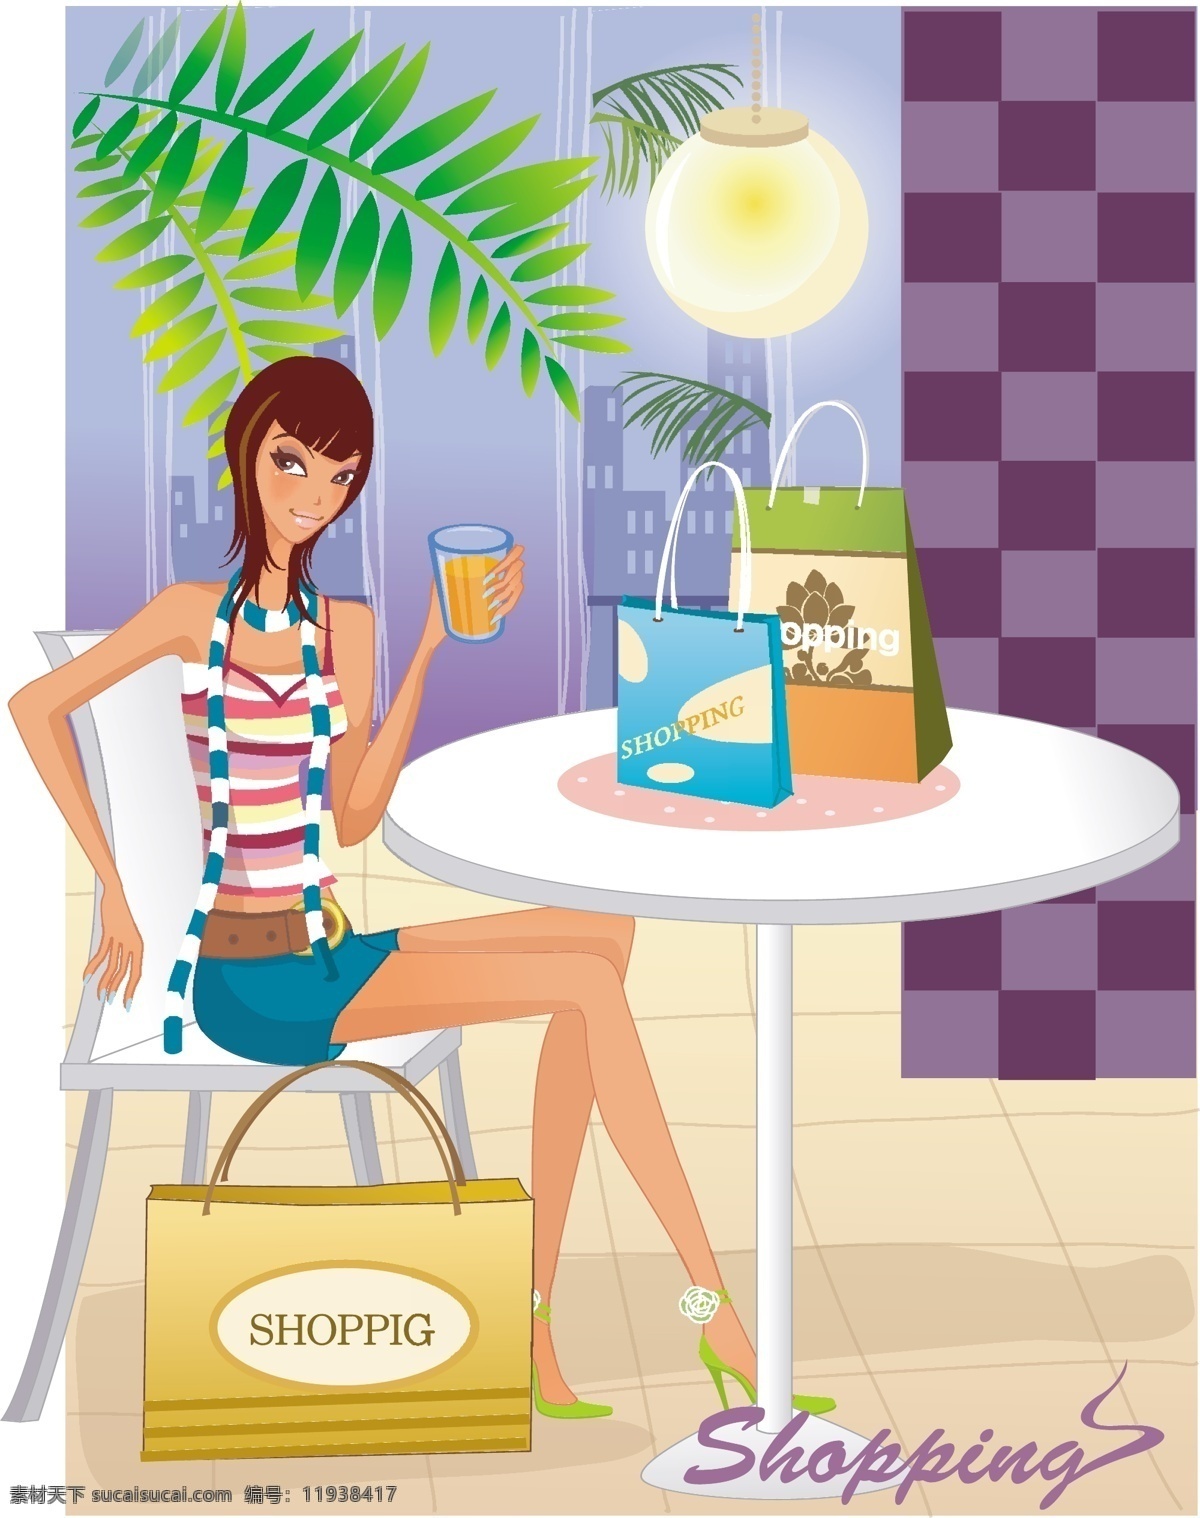 时尚 女性 购物 eps格式 背景 吊灯 购物袋 围巾 植物 桌子 矢量图 矢量人物